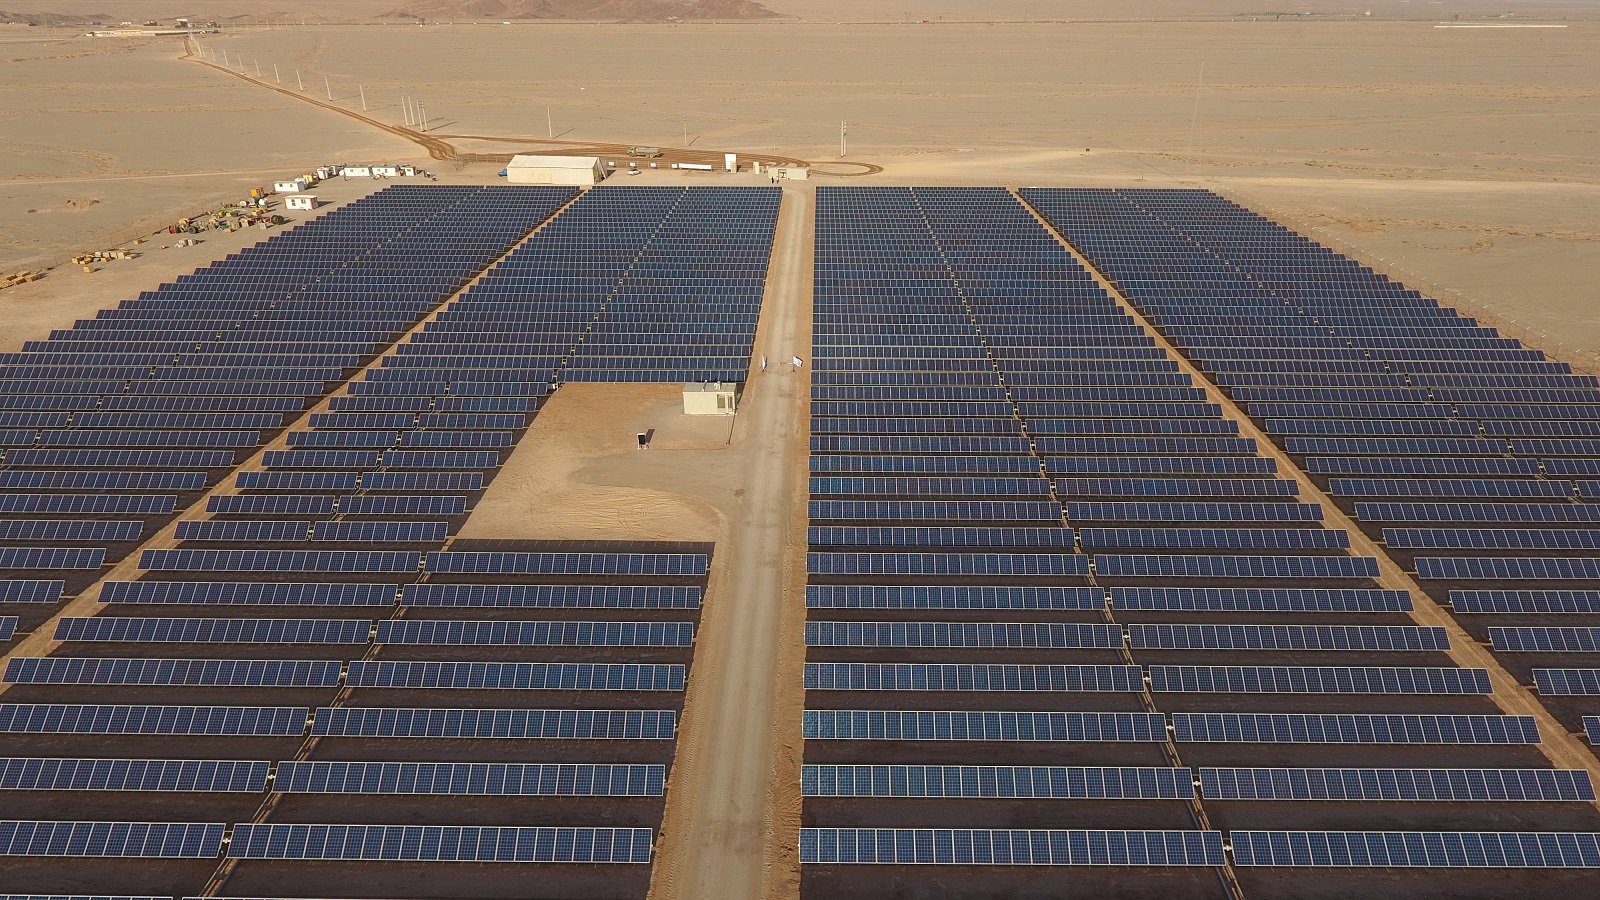 استقبال سرمایه گذاران برای احداث نیروگاه خورشیدی در استان یزد/ برگزیدگان سرمایه گذاری ۱۵۴ مگاواتی در زمینه احداث نیروگاه خورشیدی در یزد مشخص شدند